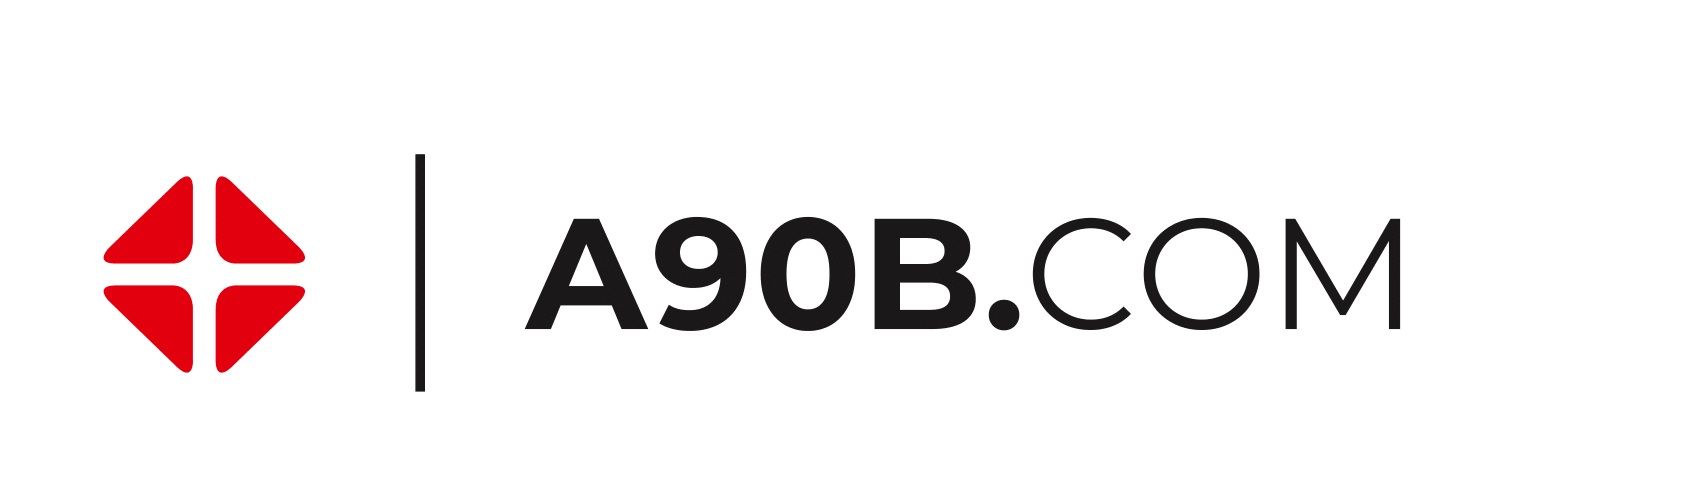 A90B.com